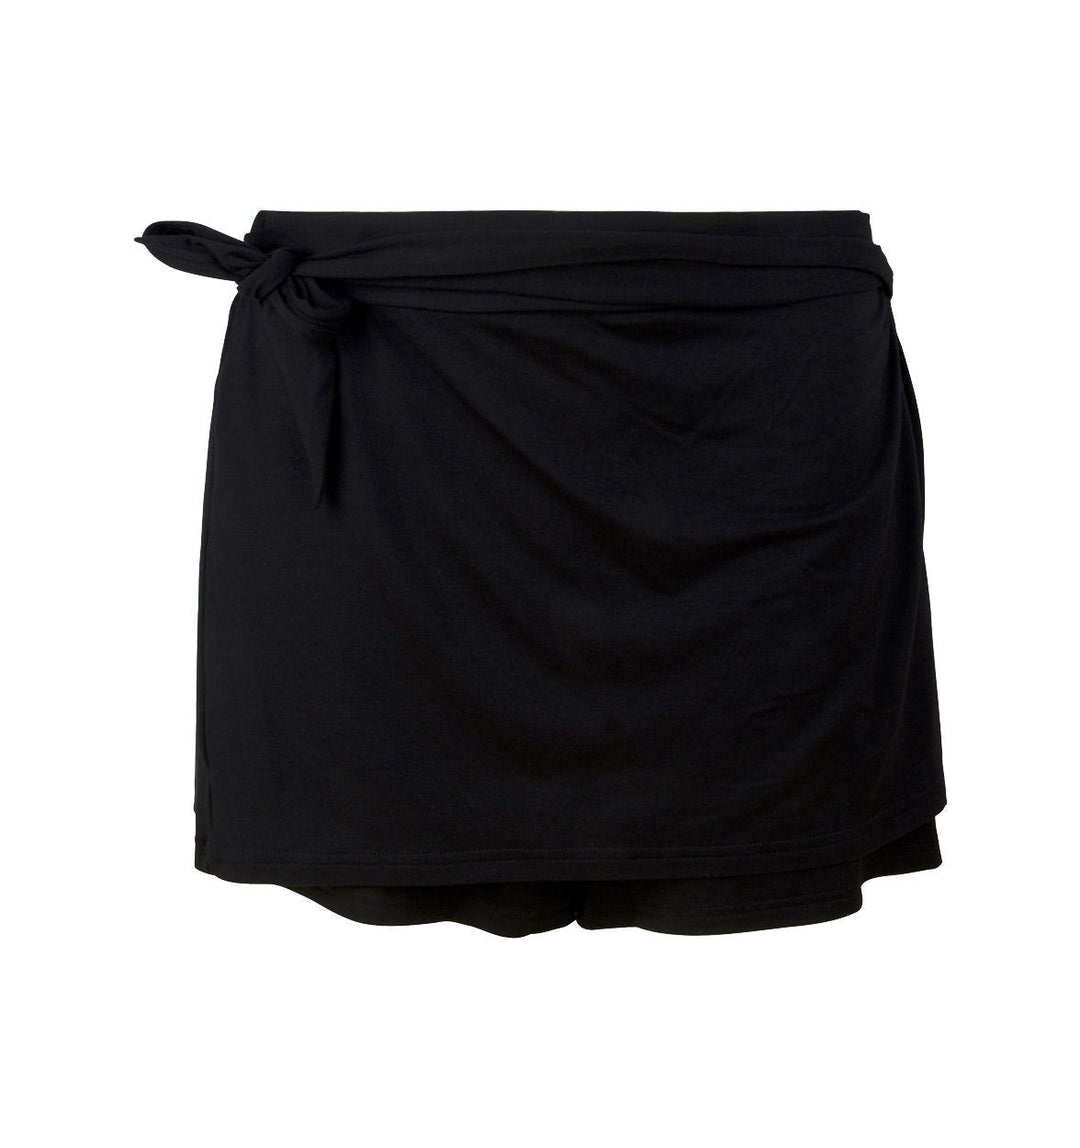 Antigel от Lise Charmel - Пляжные шорты La Chiquissima Noir Shorts Antigel от Lise Charmel Купальники